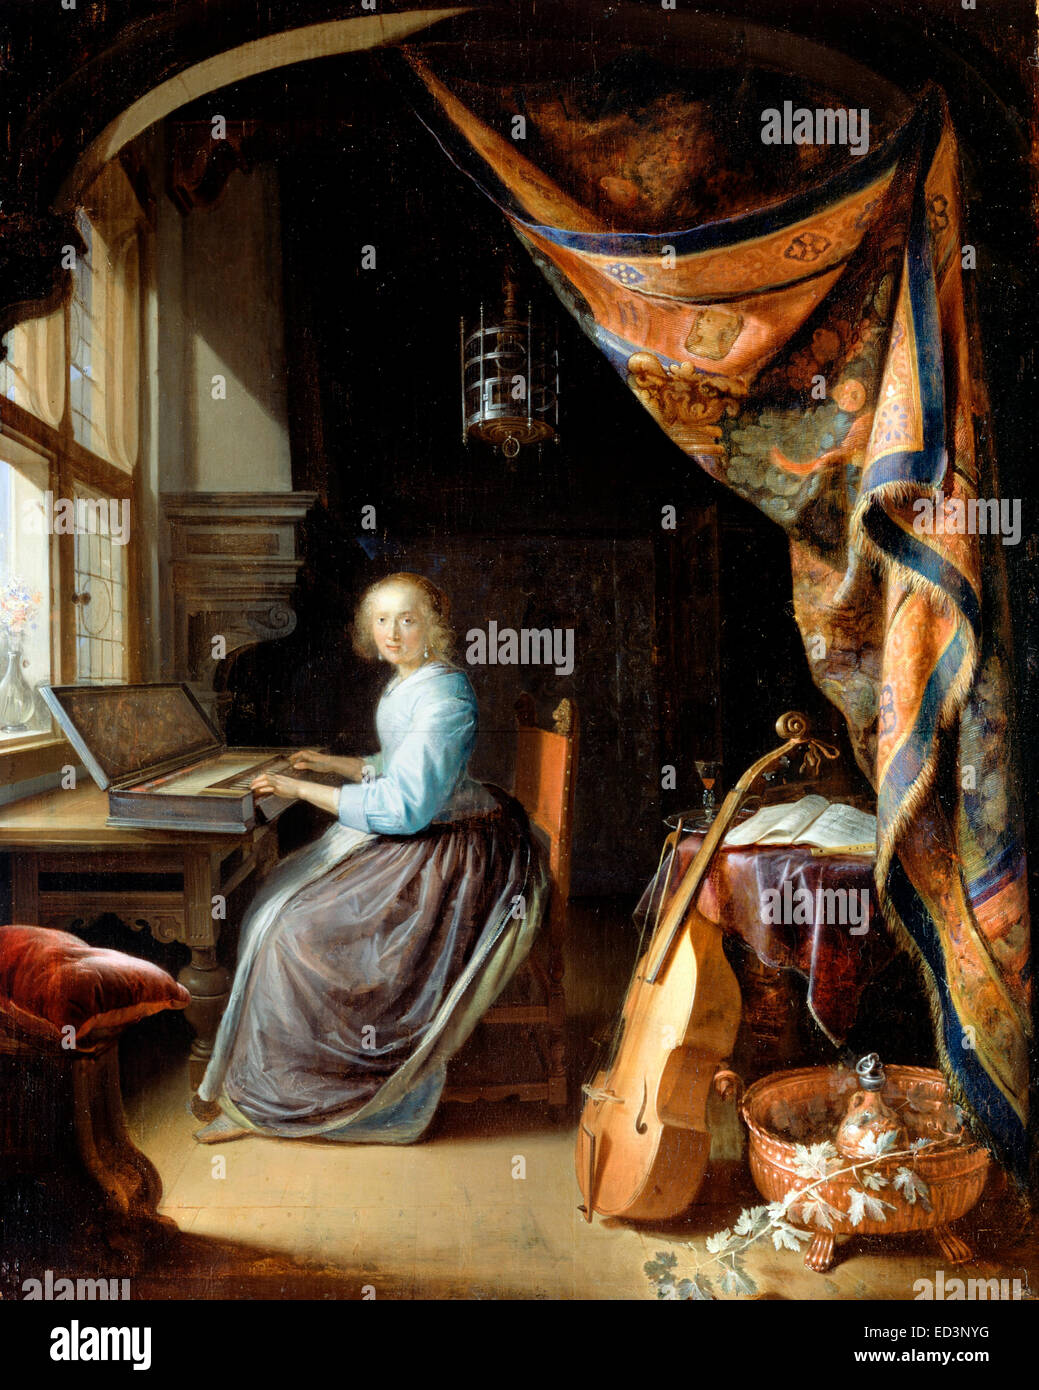 Gerrit Dou, eine Frau ein Clavichord spielen. Ca. 1665. Öl auf Holz. Dulwich Picture Gallery, London, UK. Stockfoto